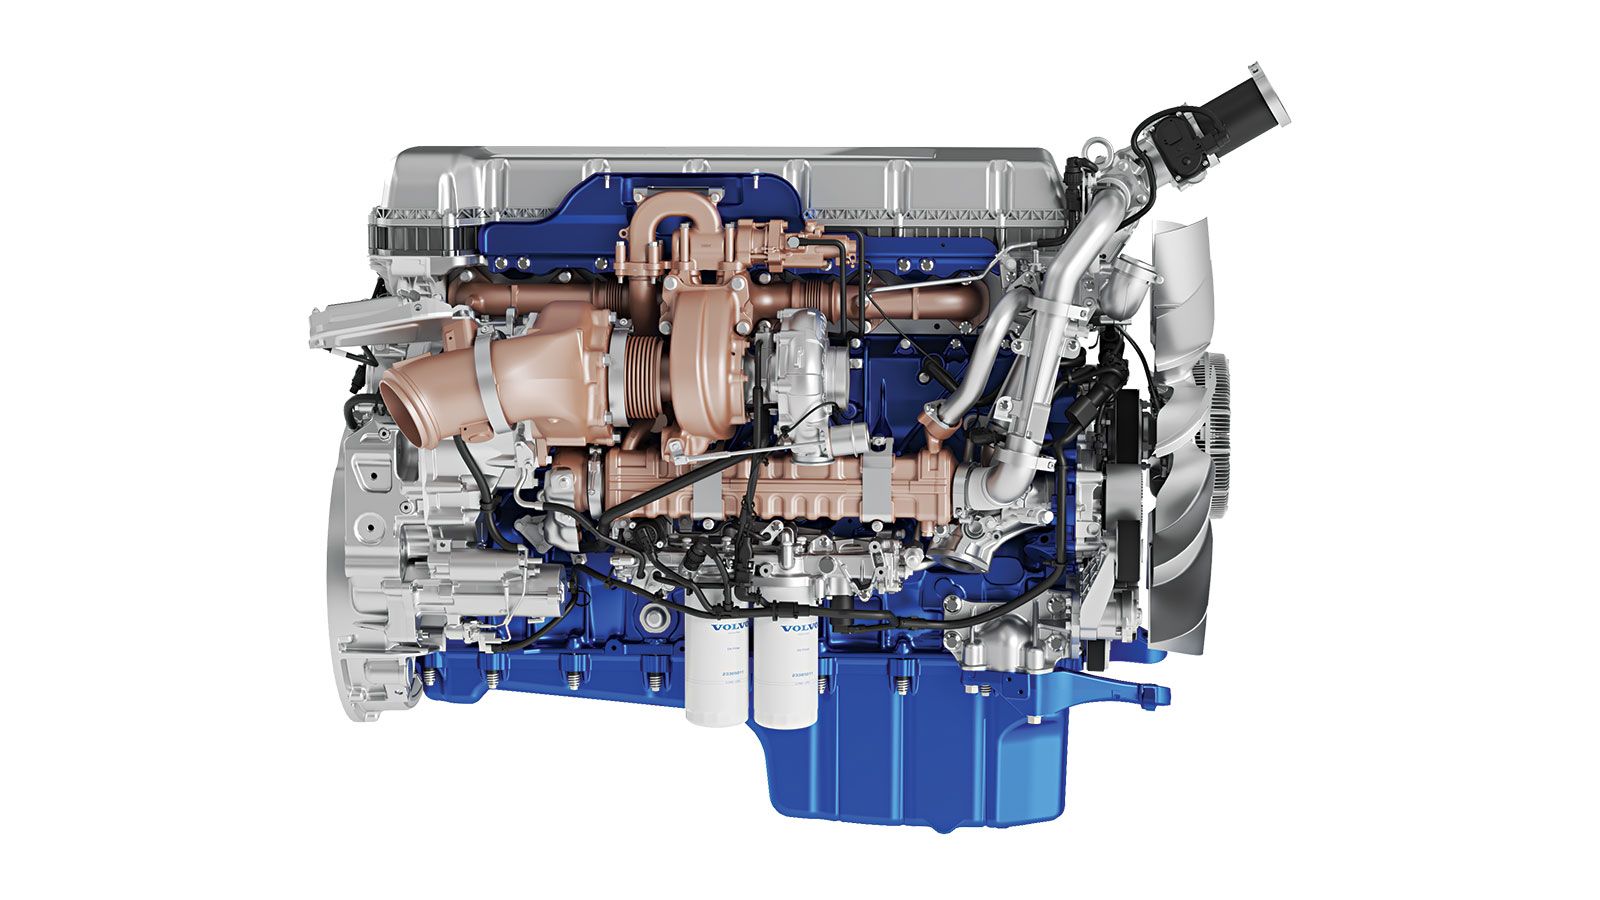 Χάρη στο σύστημα «Turbo Compound» και πολλαπλές δομικές αναβαθμίσεις, ο νέος κινητήρας D13 της Volvo προσφέρει μείωση της κατανάλωσης έως και κατά 10%.